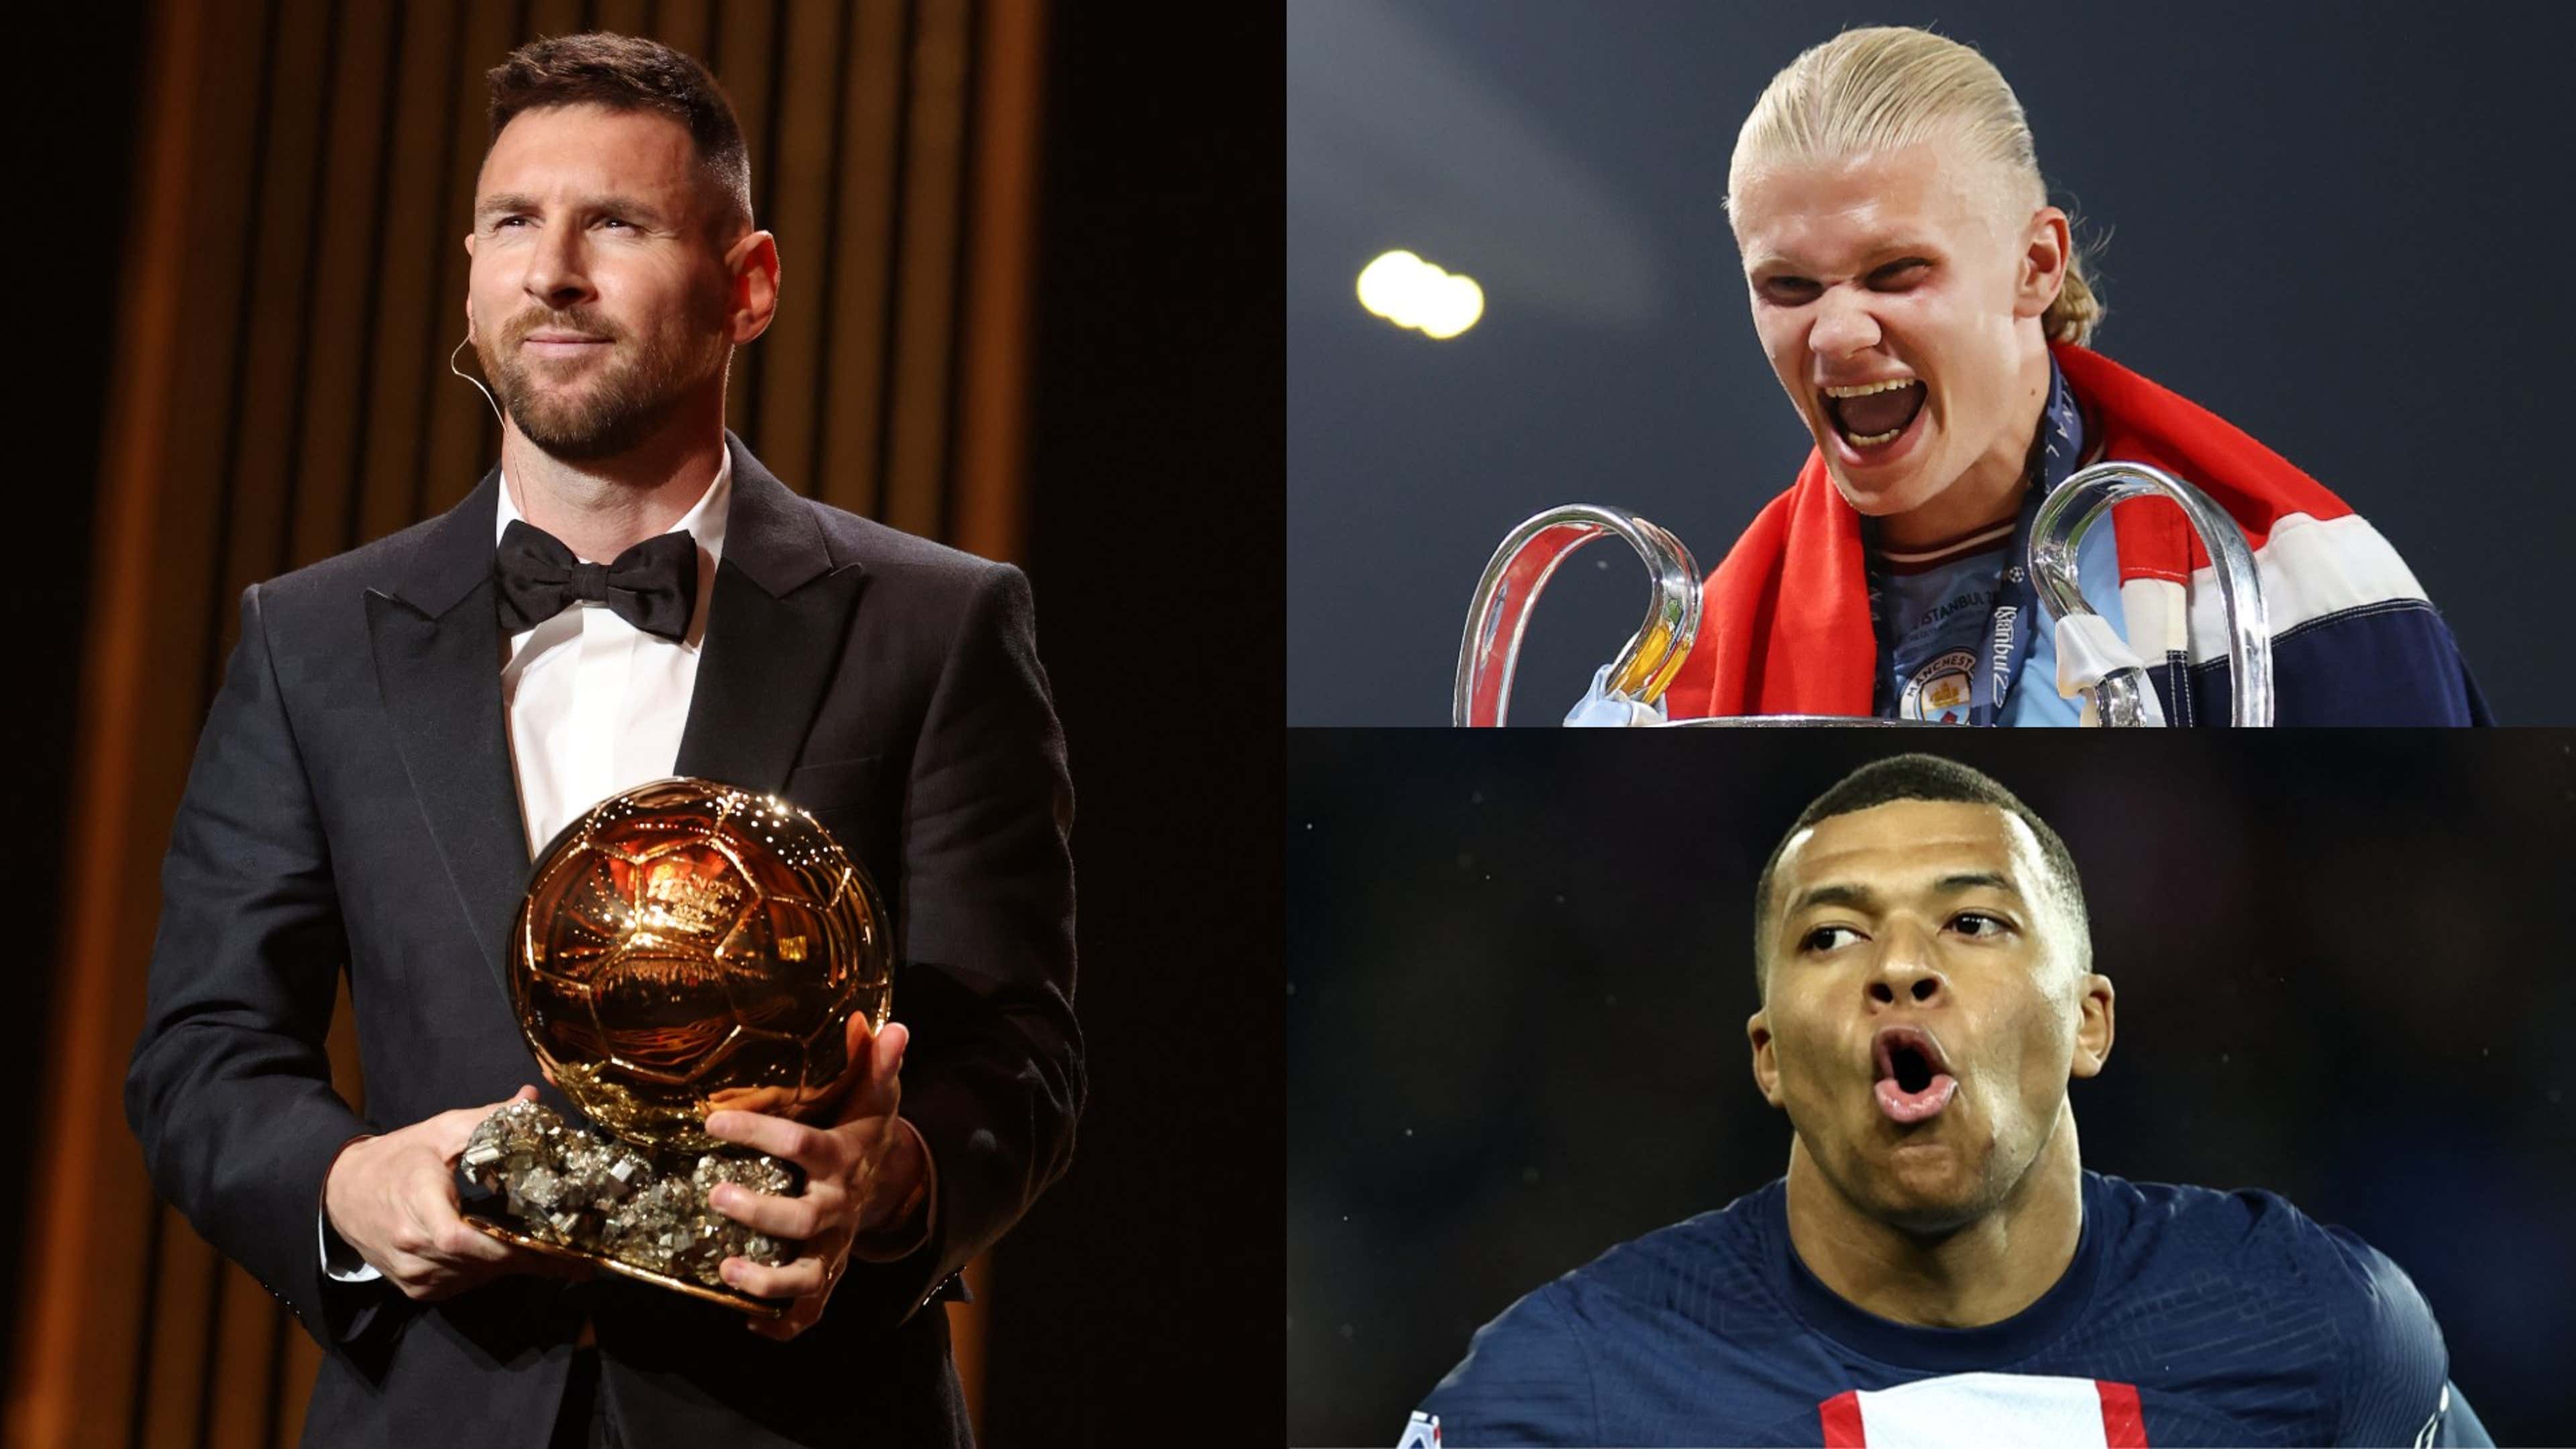 Haaland supera Messi e é eleito melhor jogador do ano pela Uefa